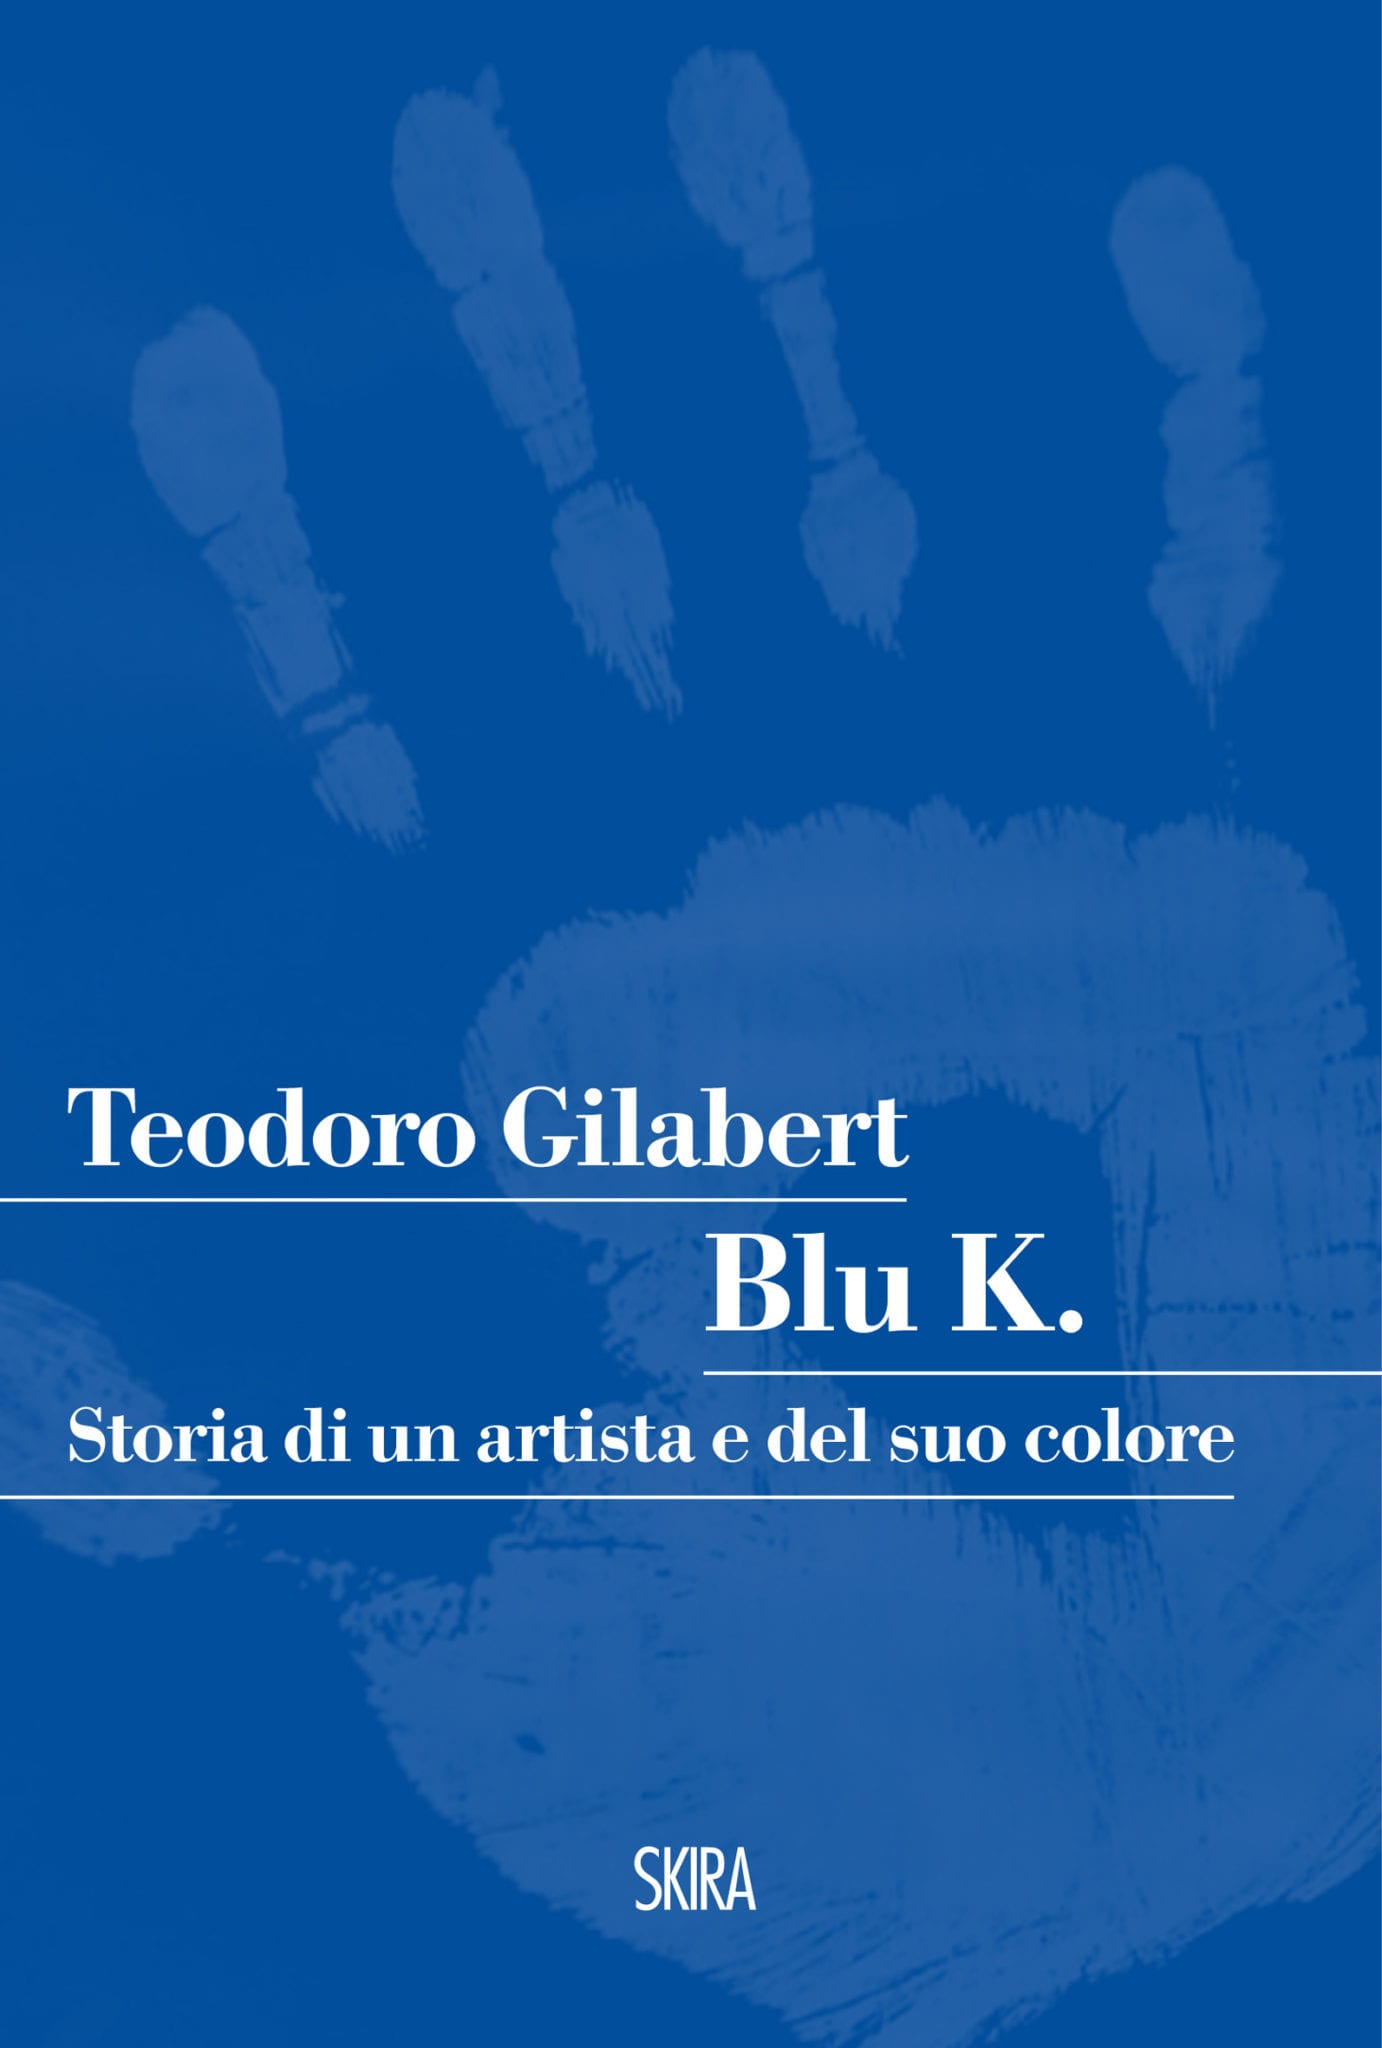 Teodoro Gilabert – Blu K. Storia di un artista e del suo colore